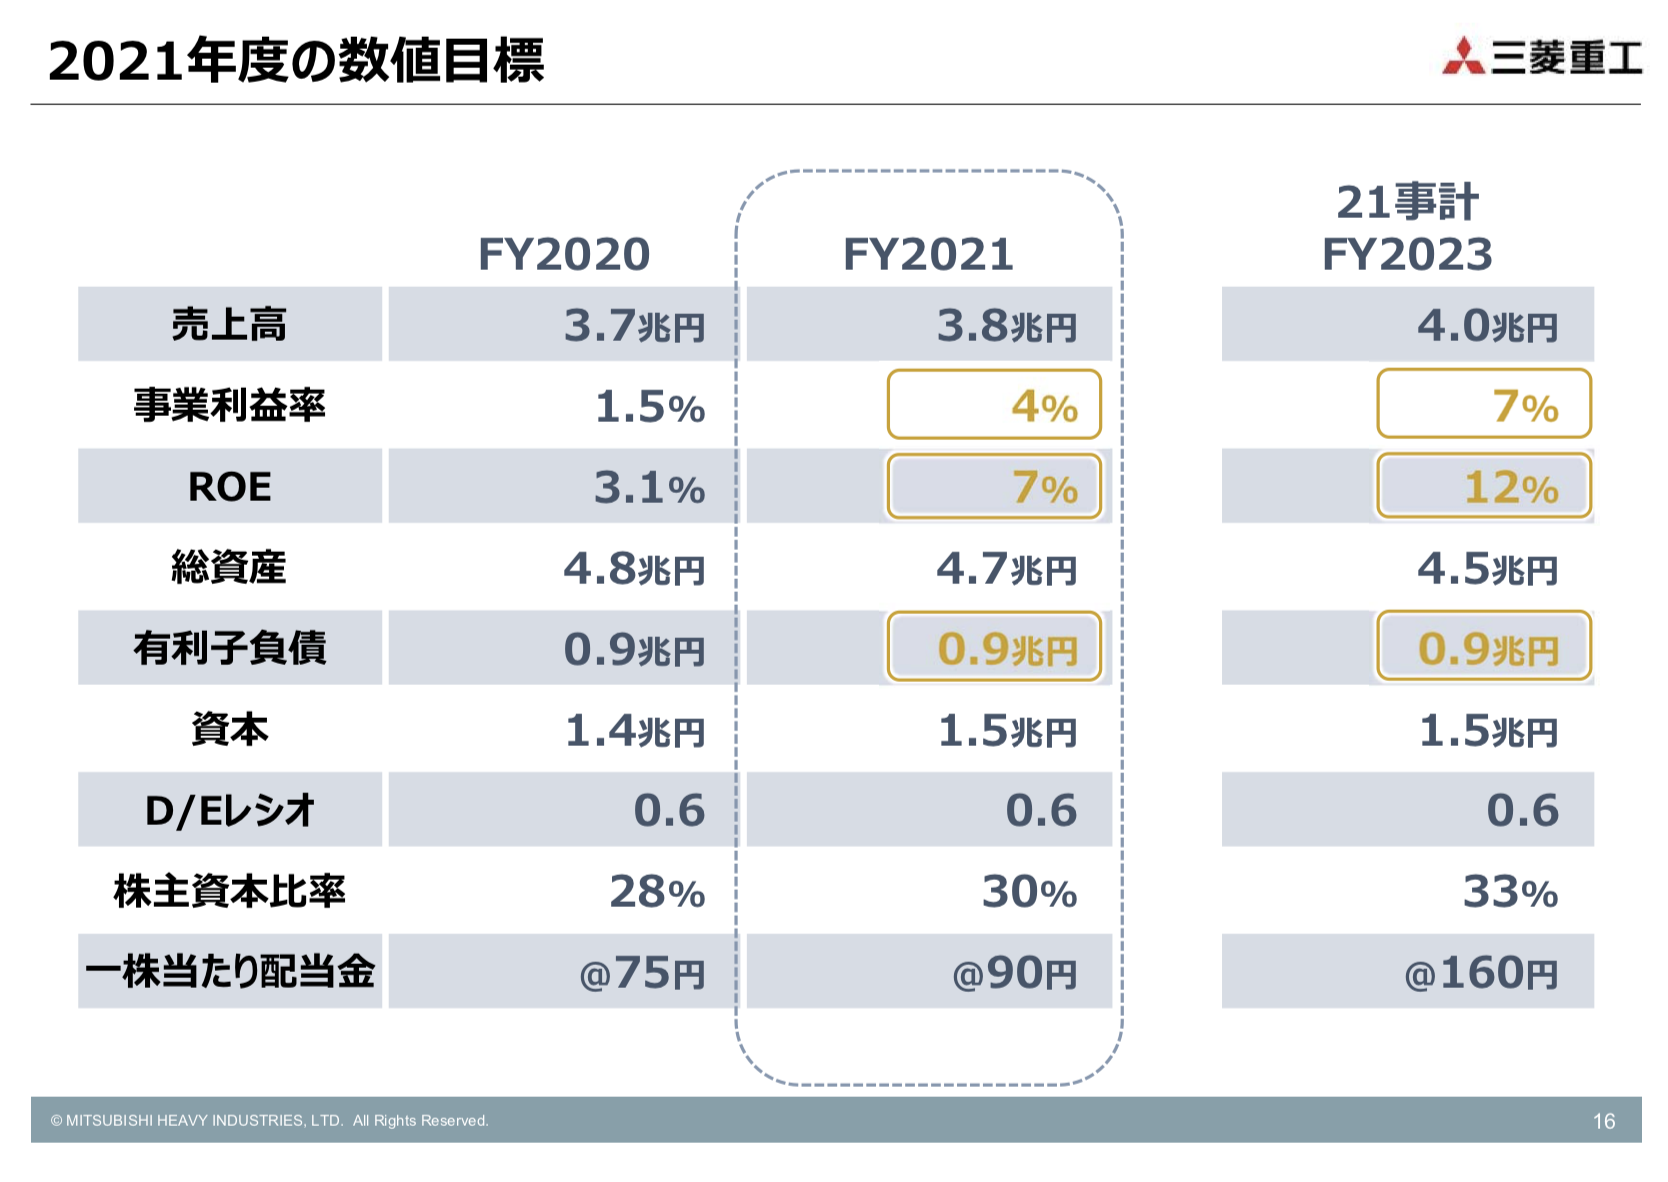 三菱重工業株式会社 2020年度決算説明及び2021事業計画推進状況